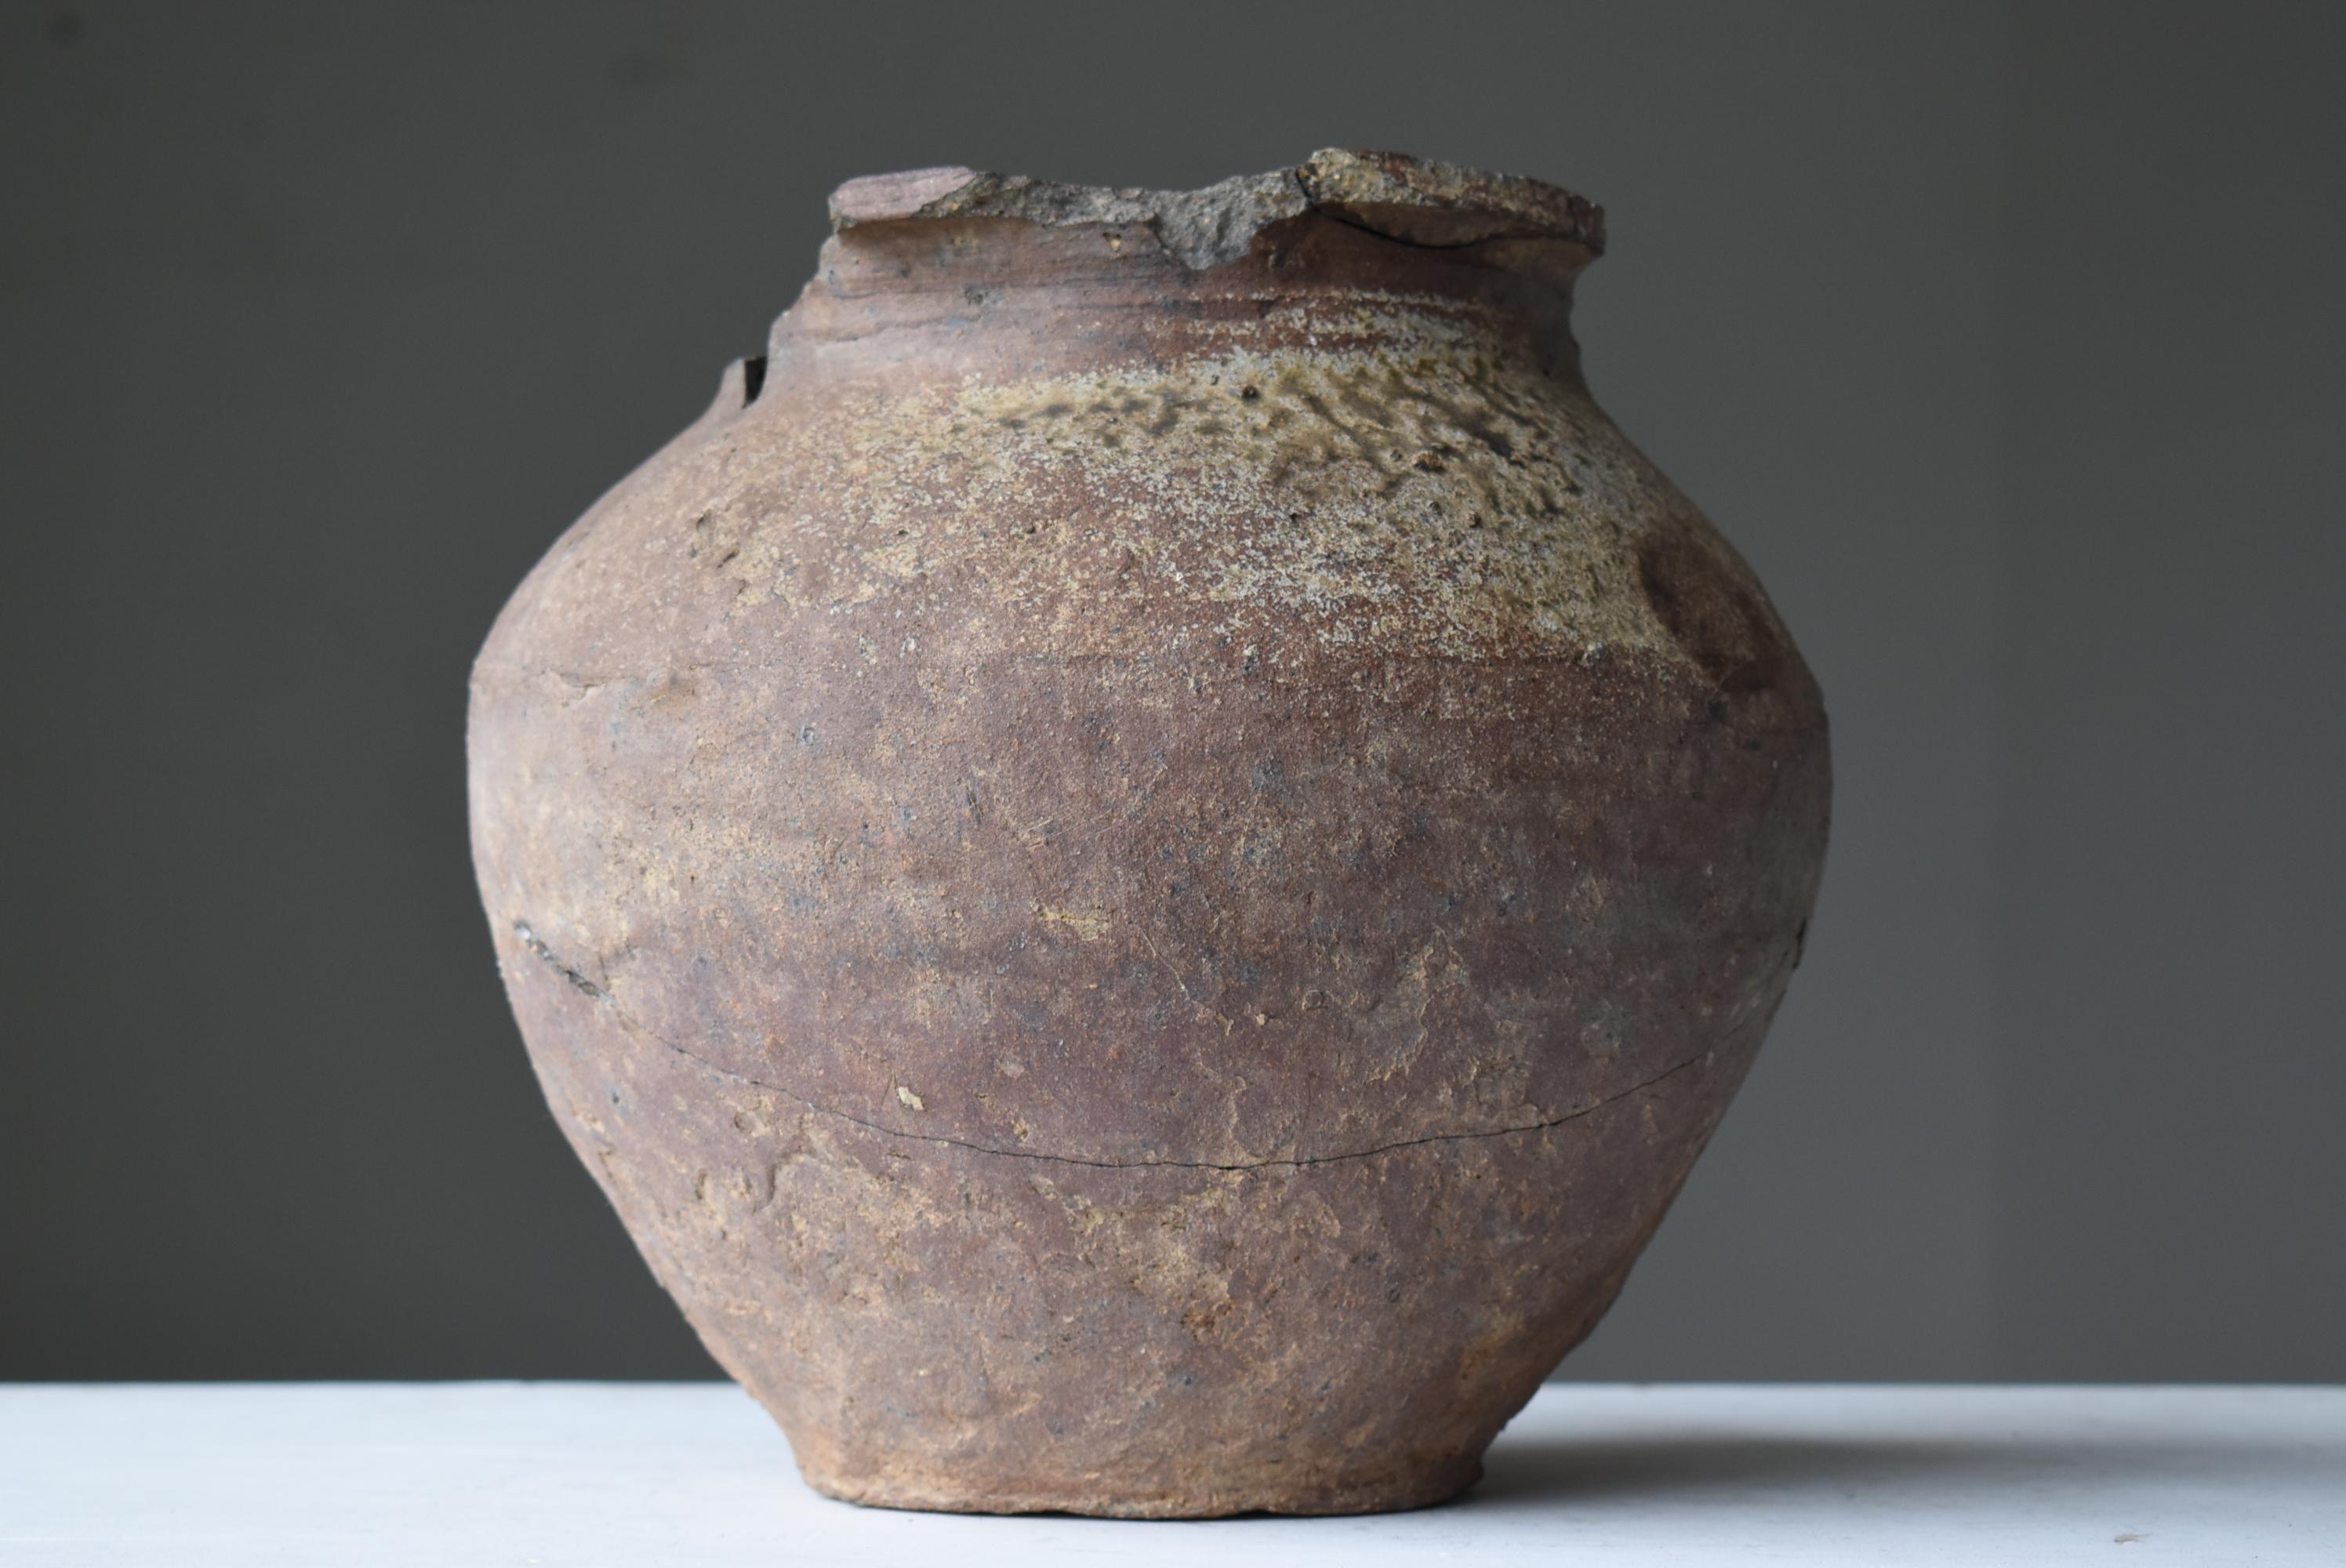 Japanese Antique Wabisabi Pottery Vase / Flower Vase Vessel Jar Tsubo 9